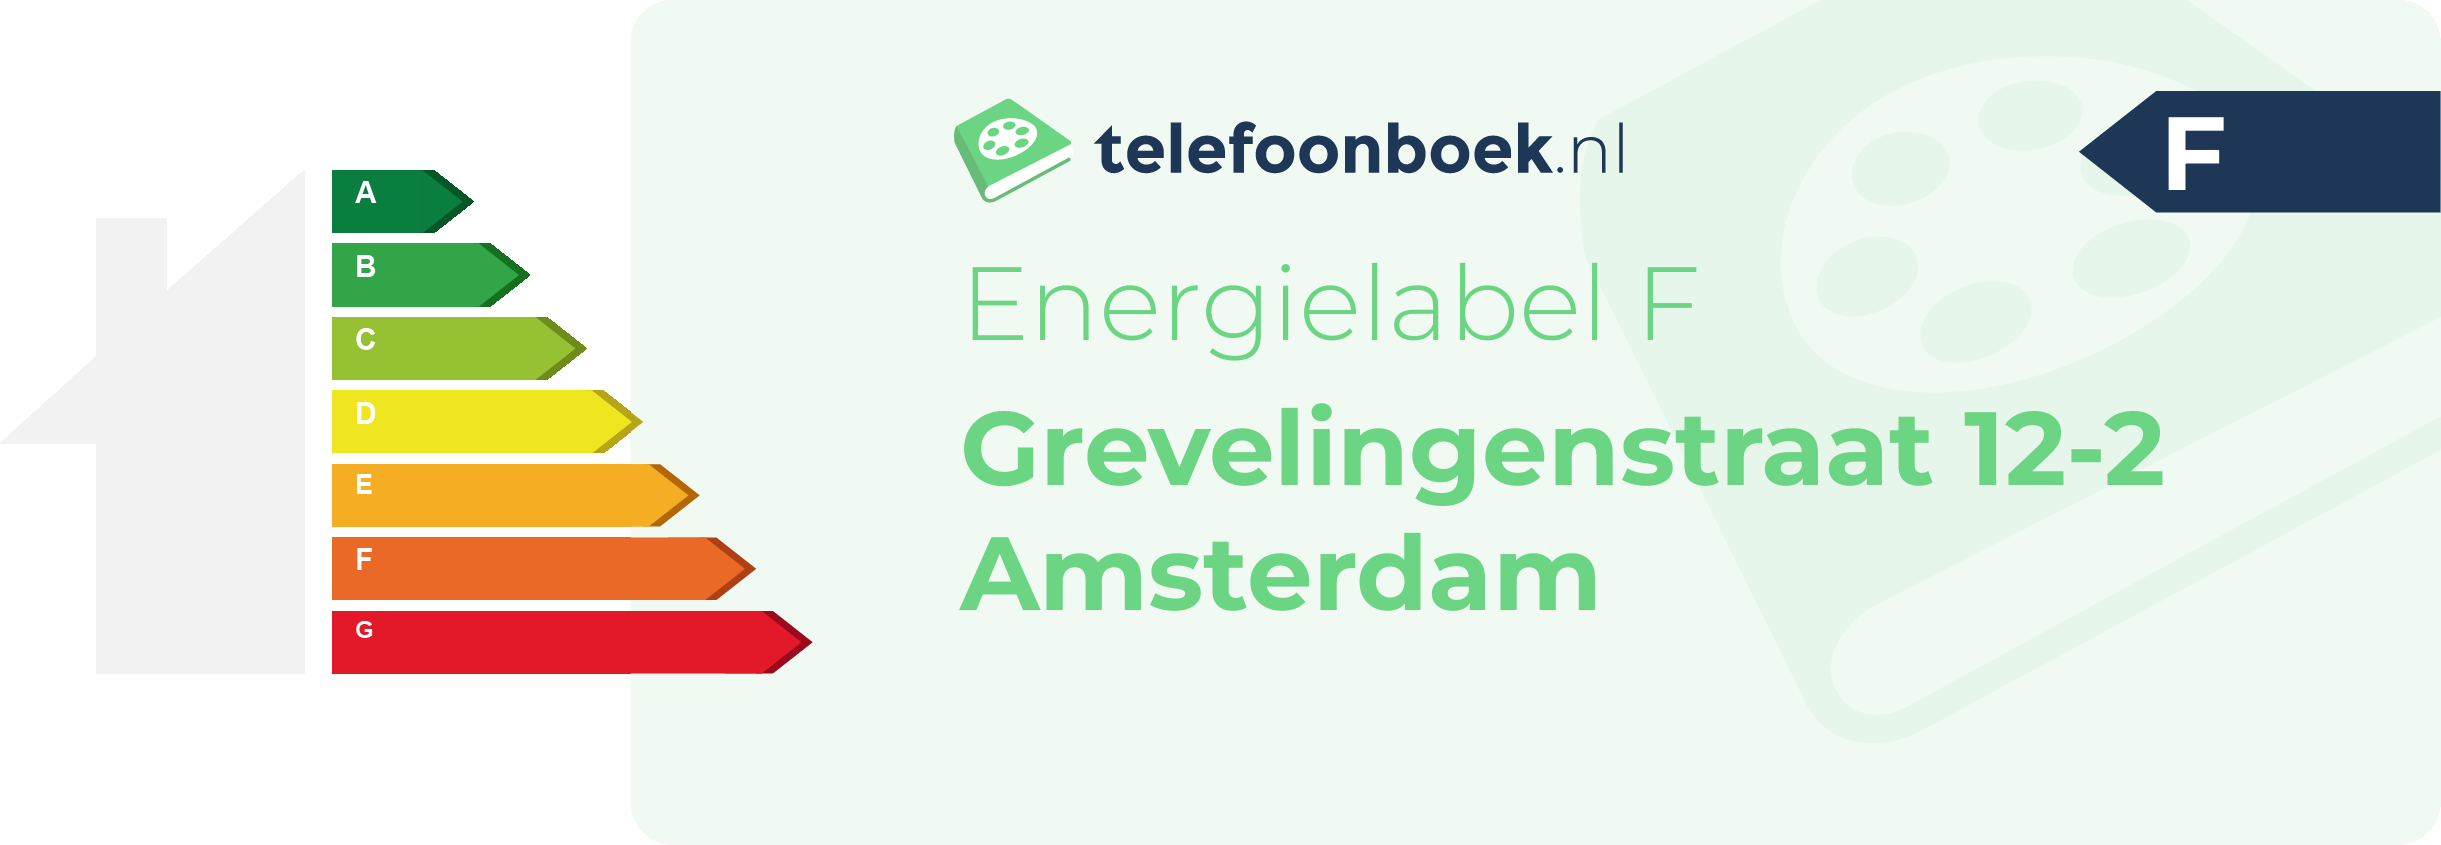 Energielabel Grevelingenstraat 12-2 Amsterdam